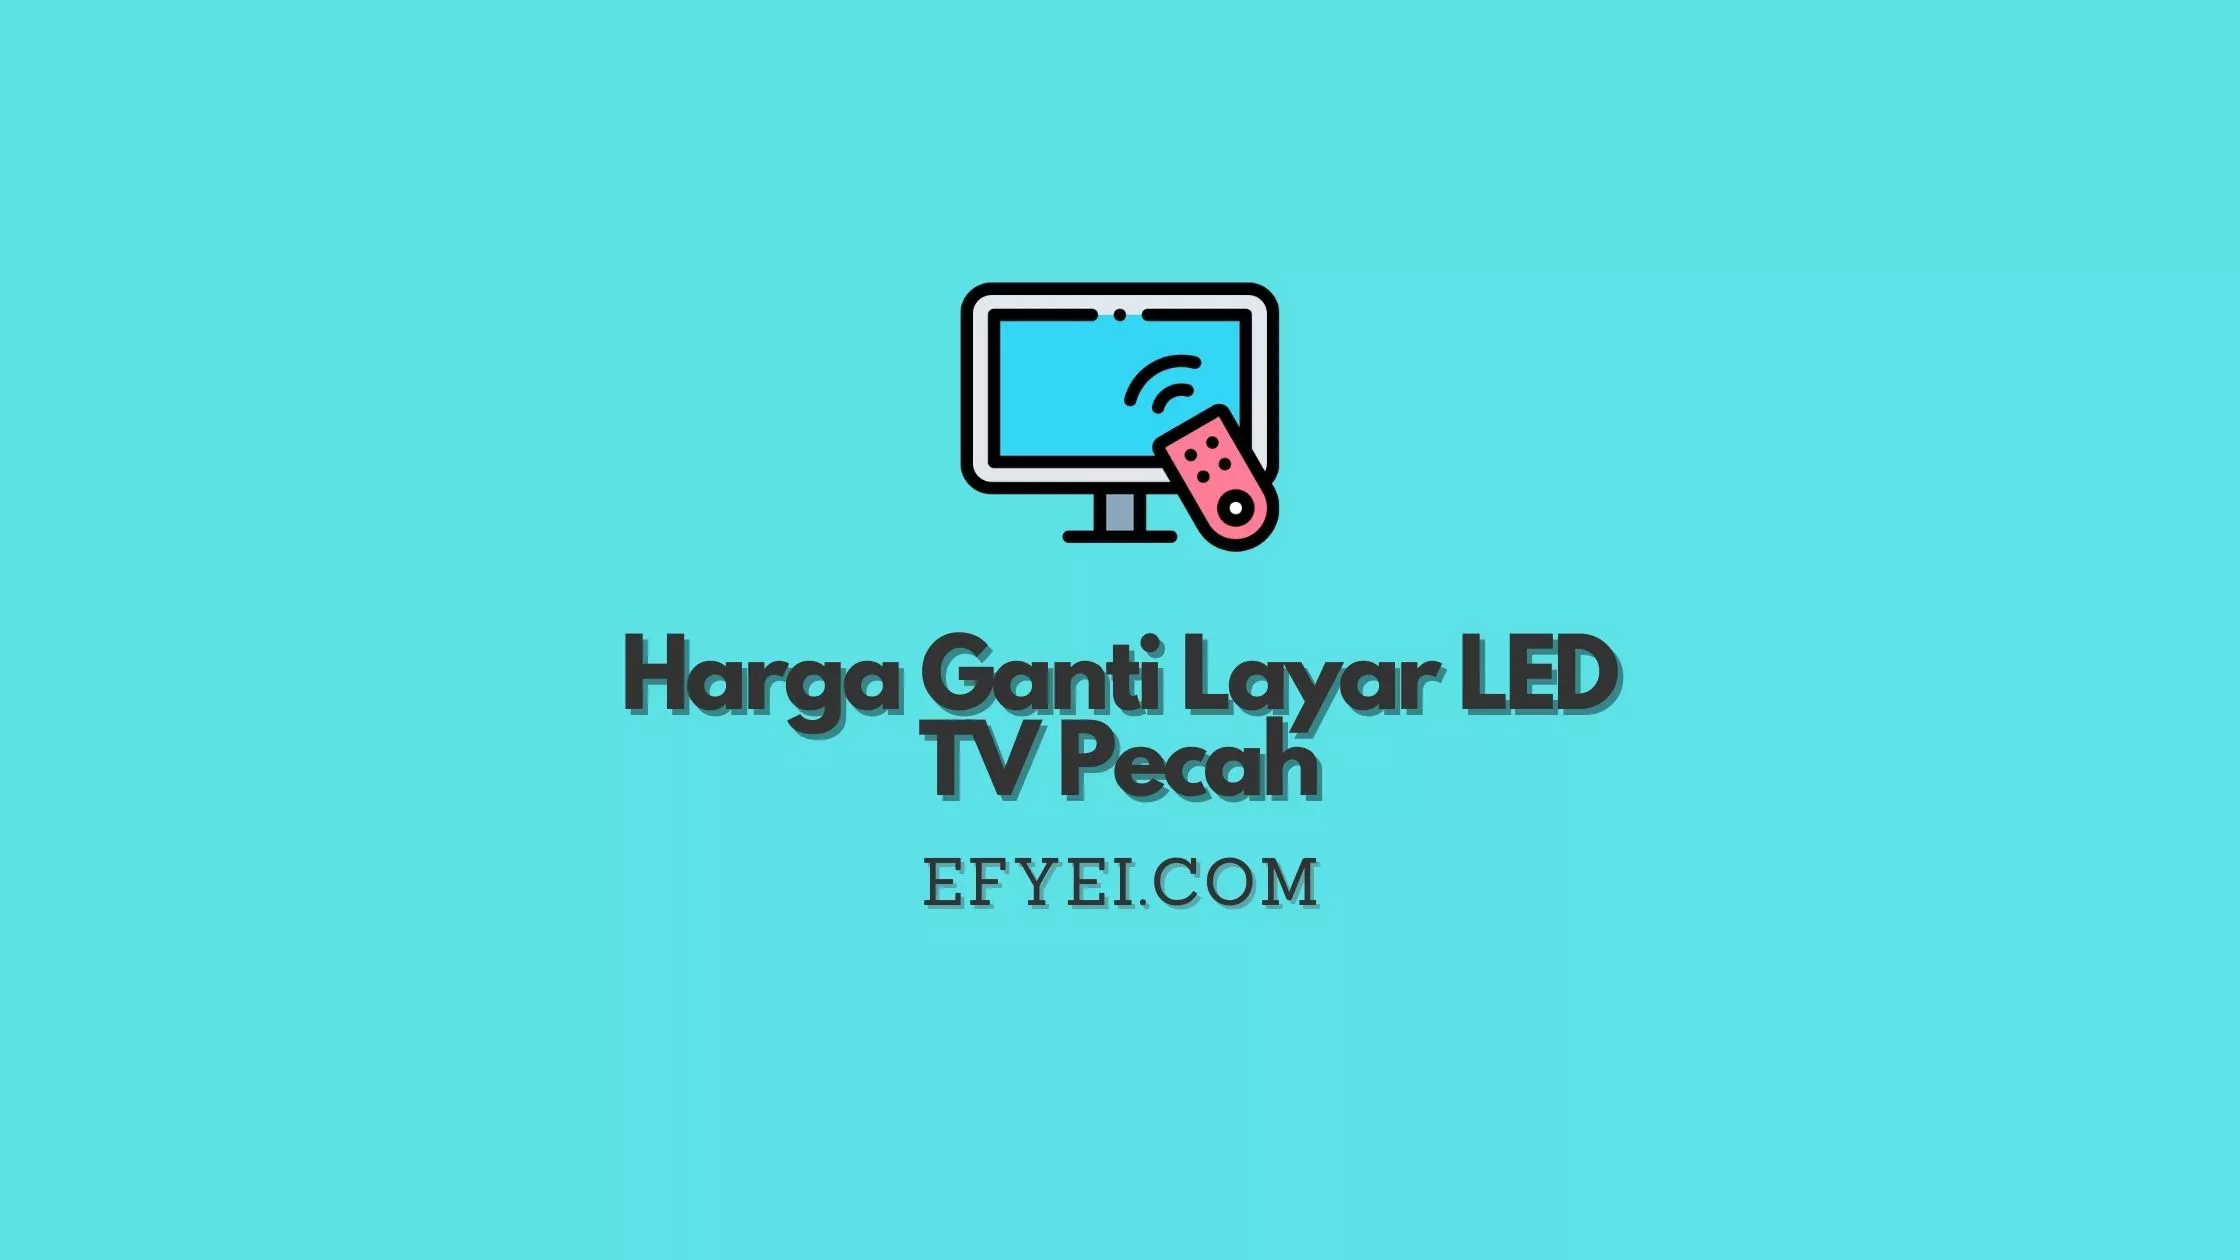 Harga Ganti Layar LED TV Pecah